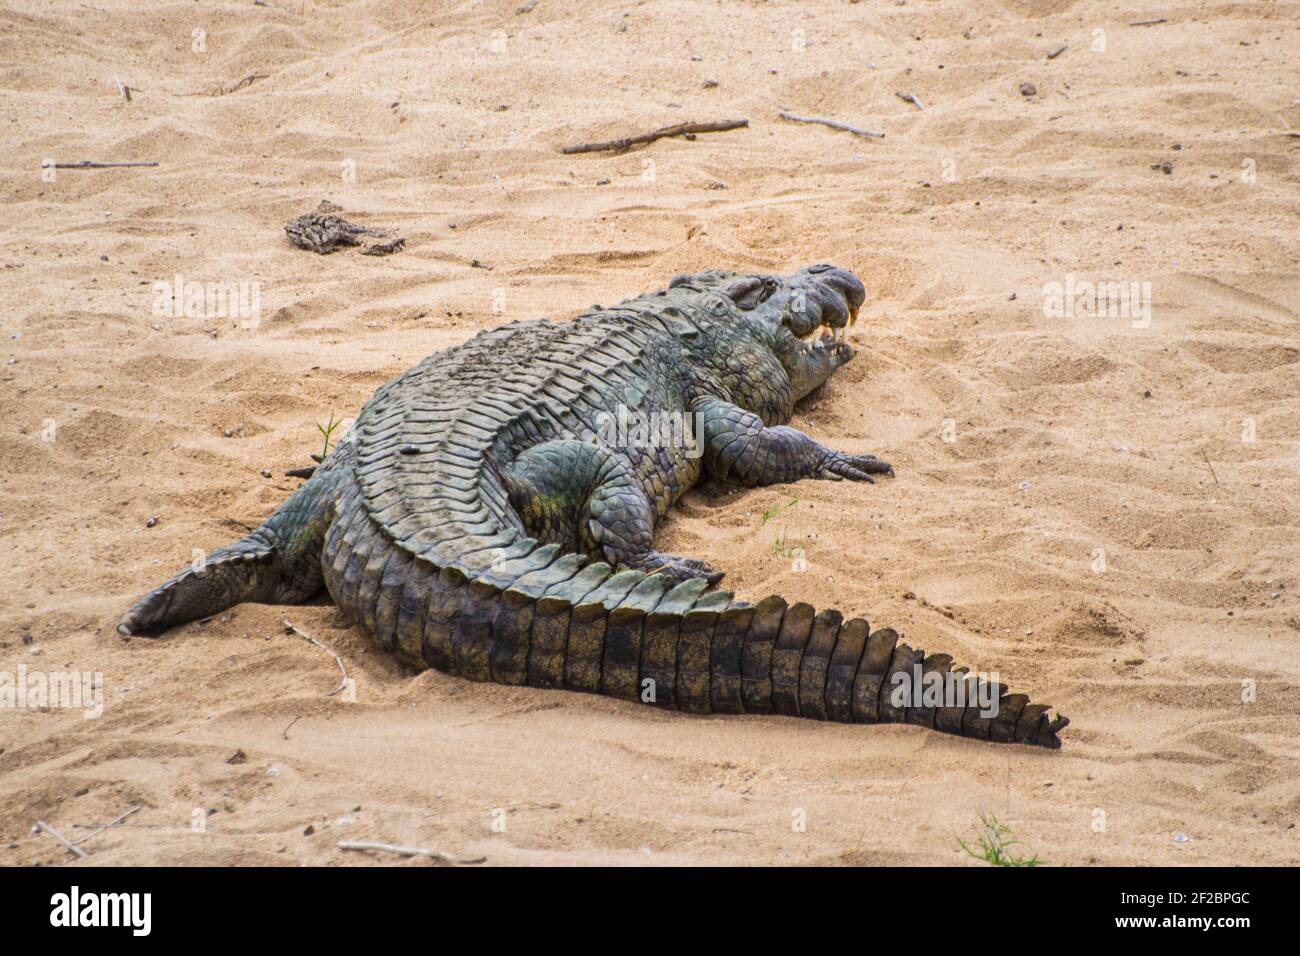 Grand crocodile du Nil dans un lit de rivière au parc national Kruger, Afrique du Sud. Février 2016 Banque D'Images